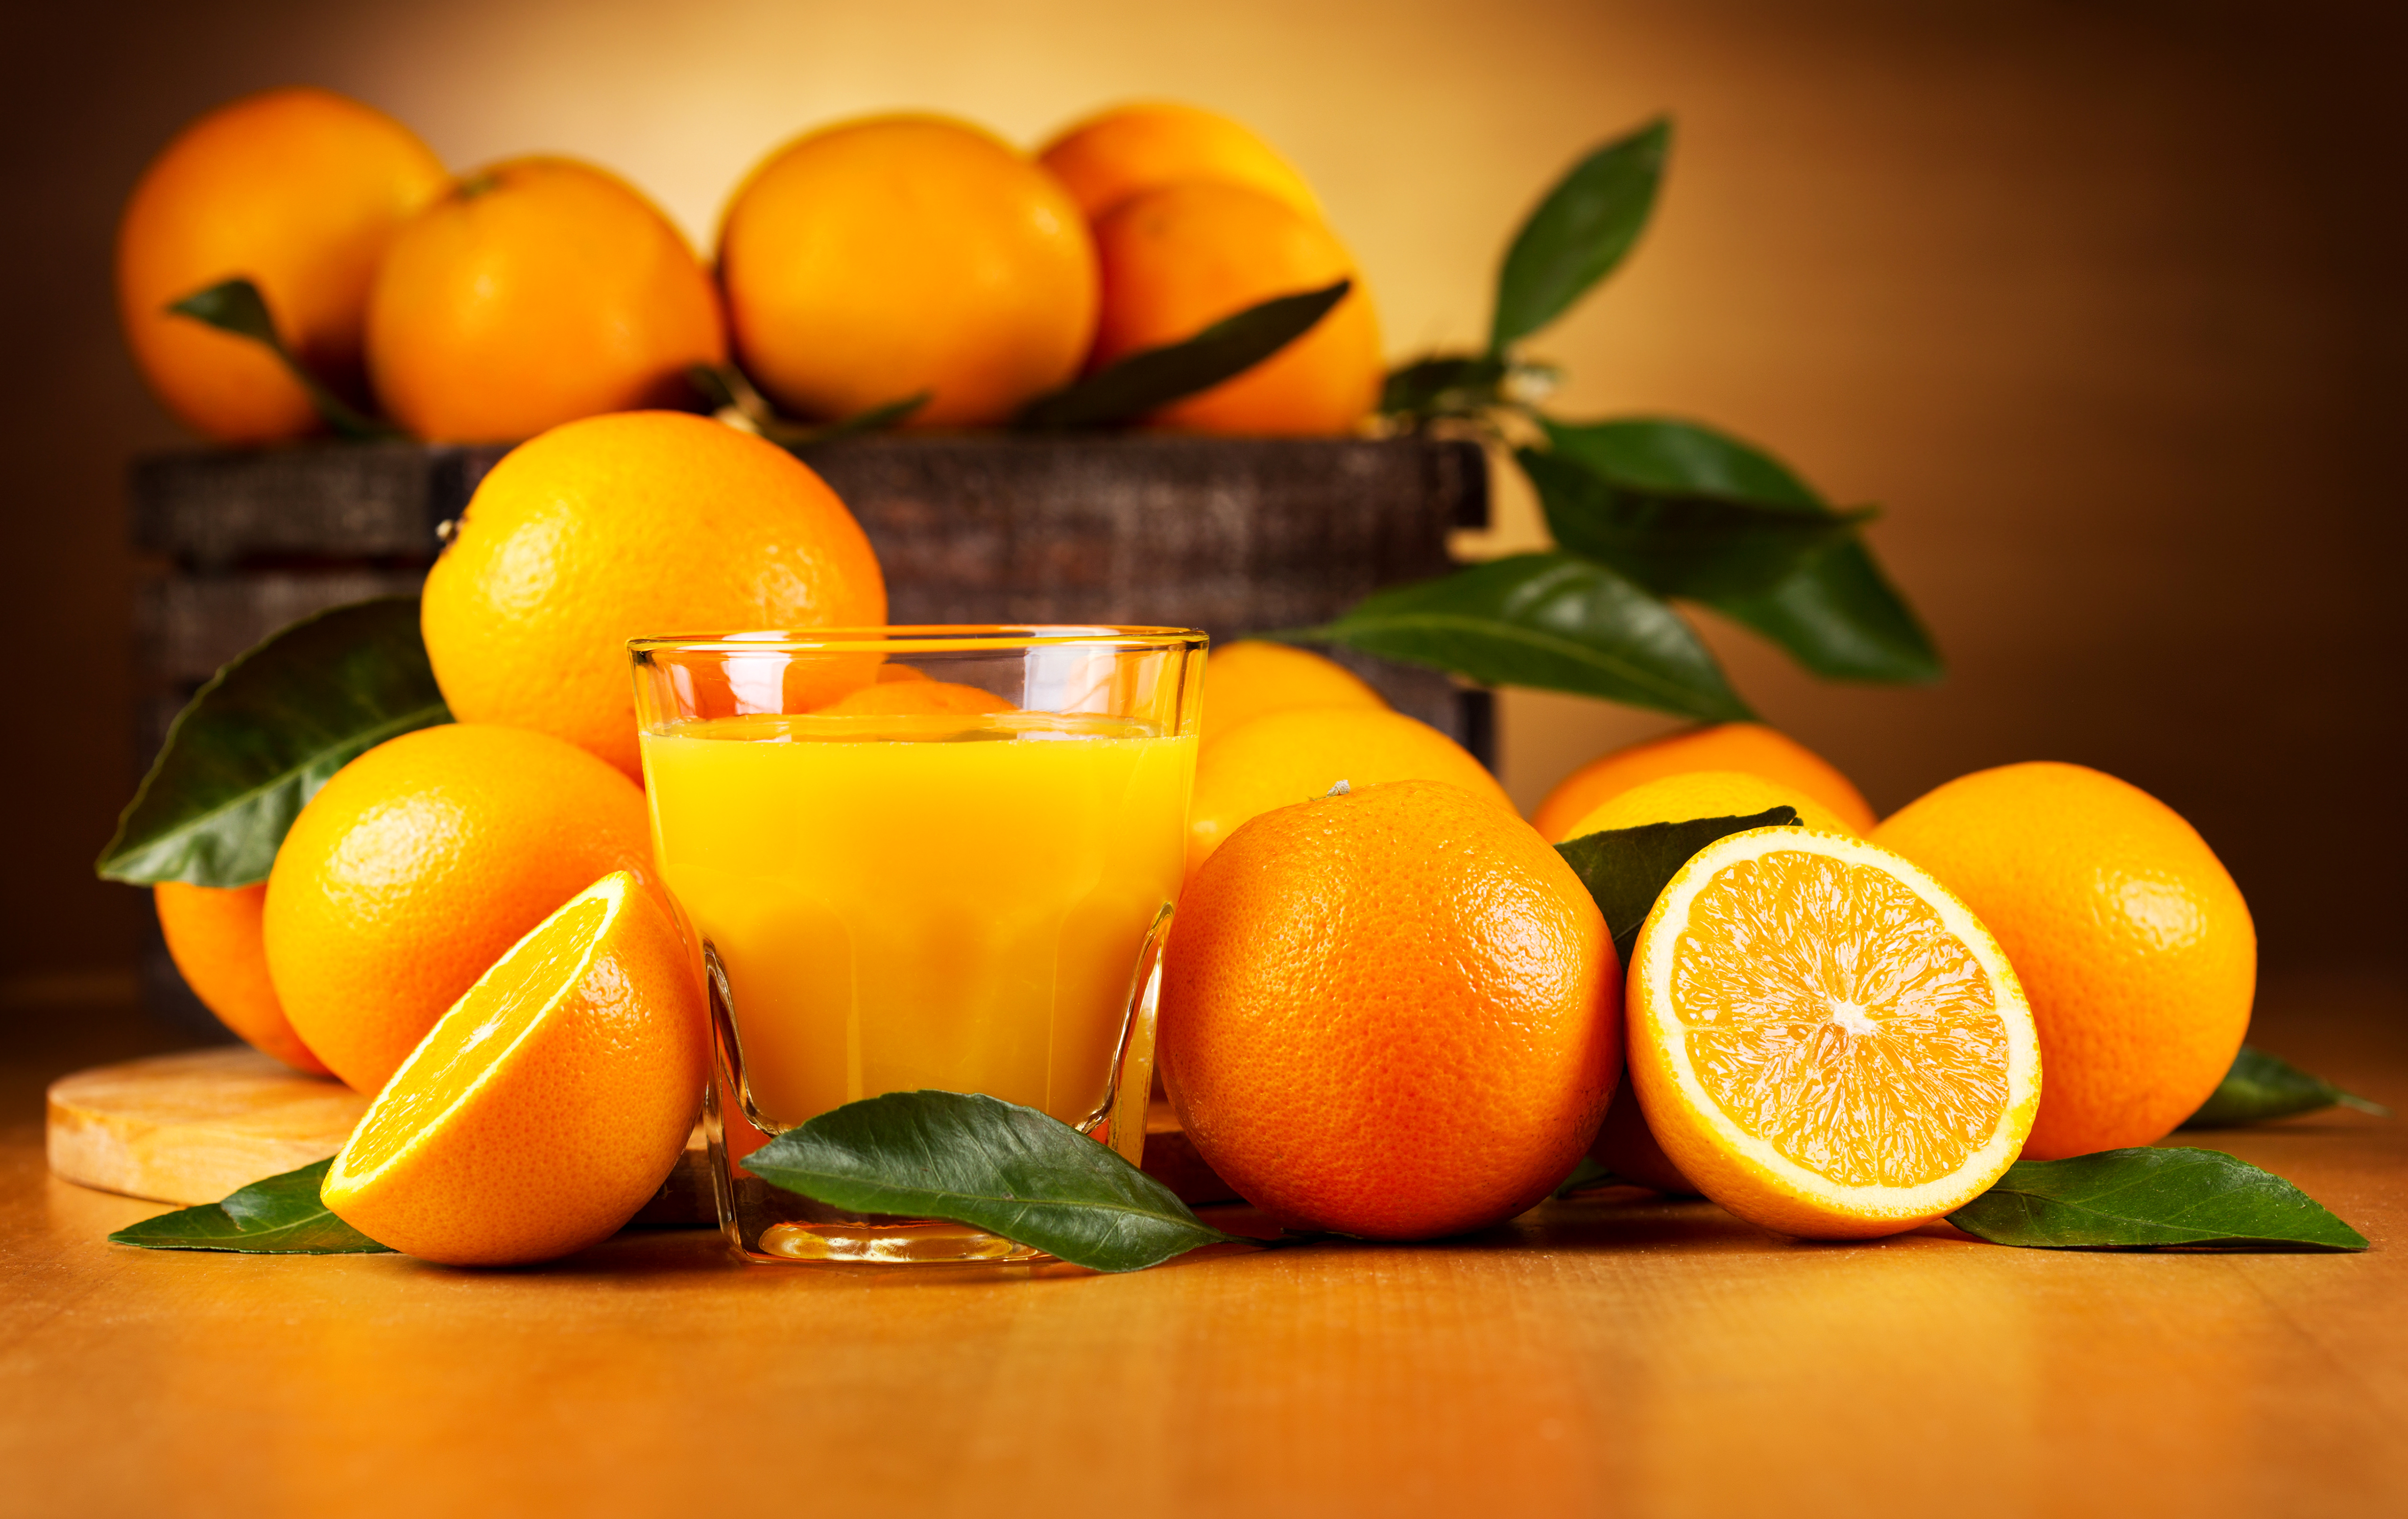 408033 免費下載壁紙 食物, 橙子, 饮品, 水果, 果汁, 橙色（颜色）, 橙色（水果） 屏保和圖片